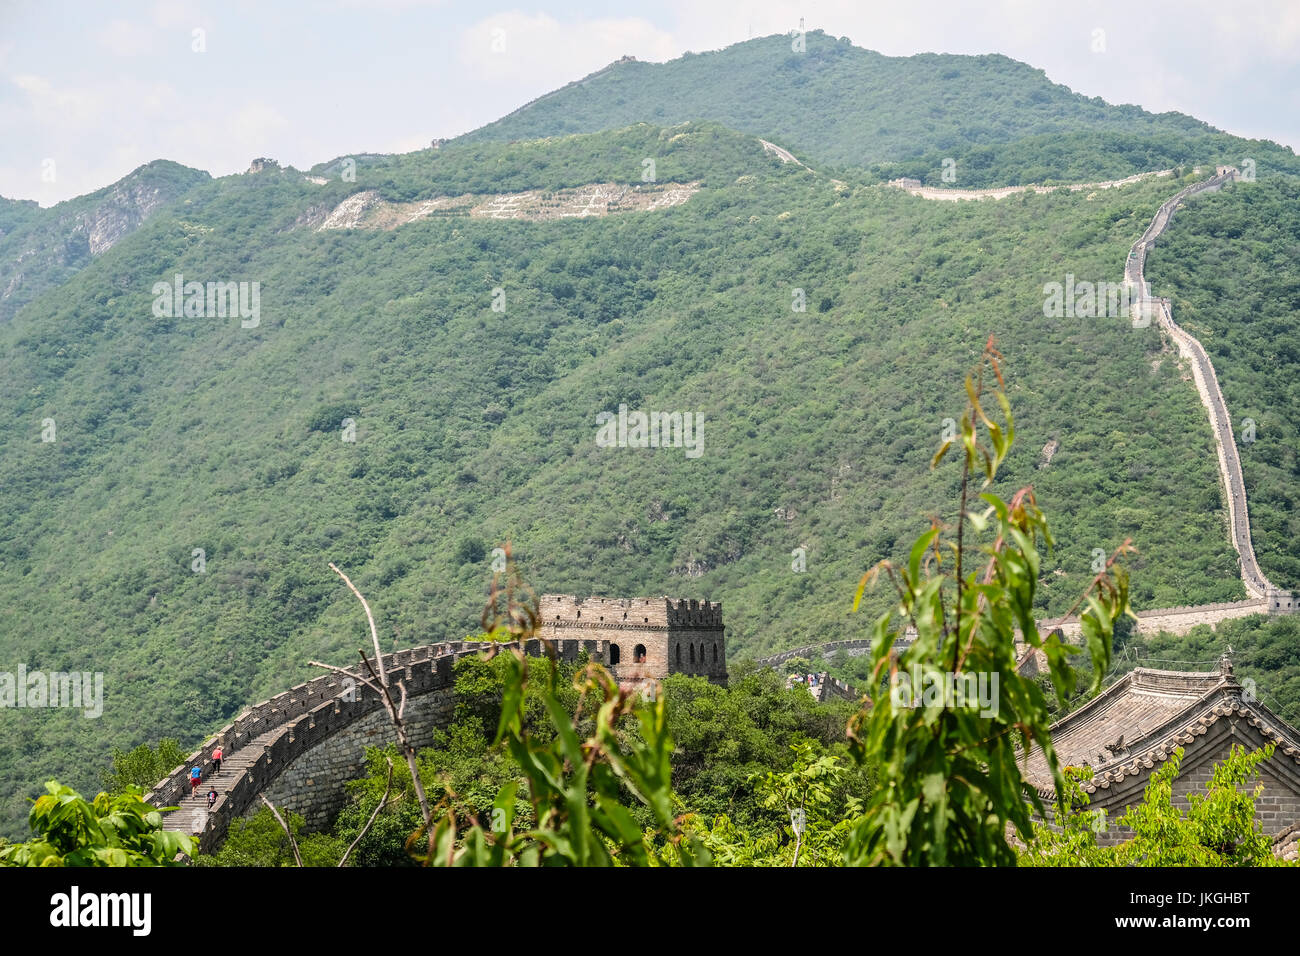 Una lunga vita al presidente Mao slogan della rivoluzione culturale era può essere visto sul lato della montagna sotto la Grande Muraglia della Cina al Mu Tian Yu Foto Stock